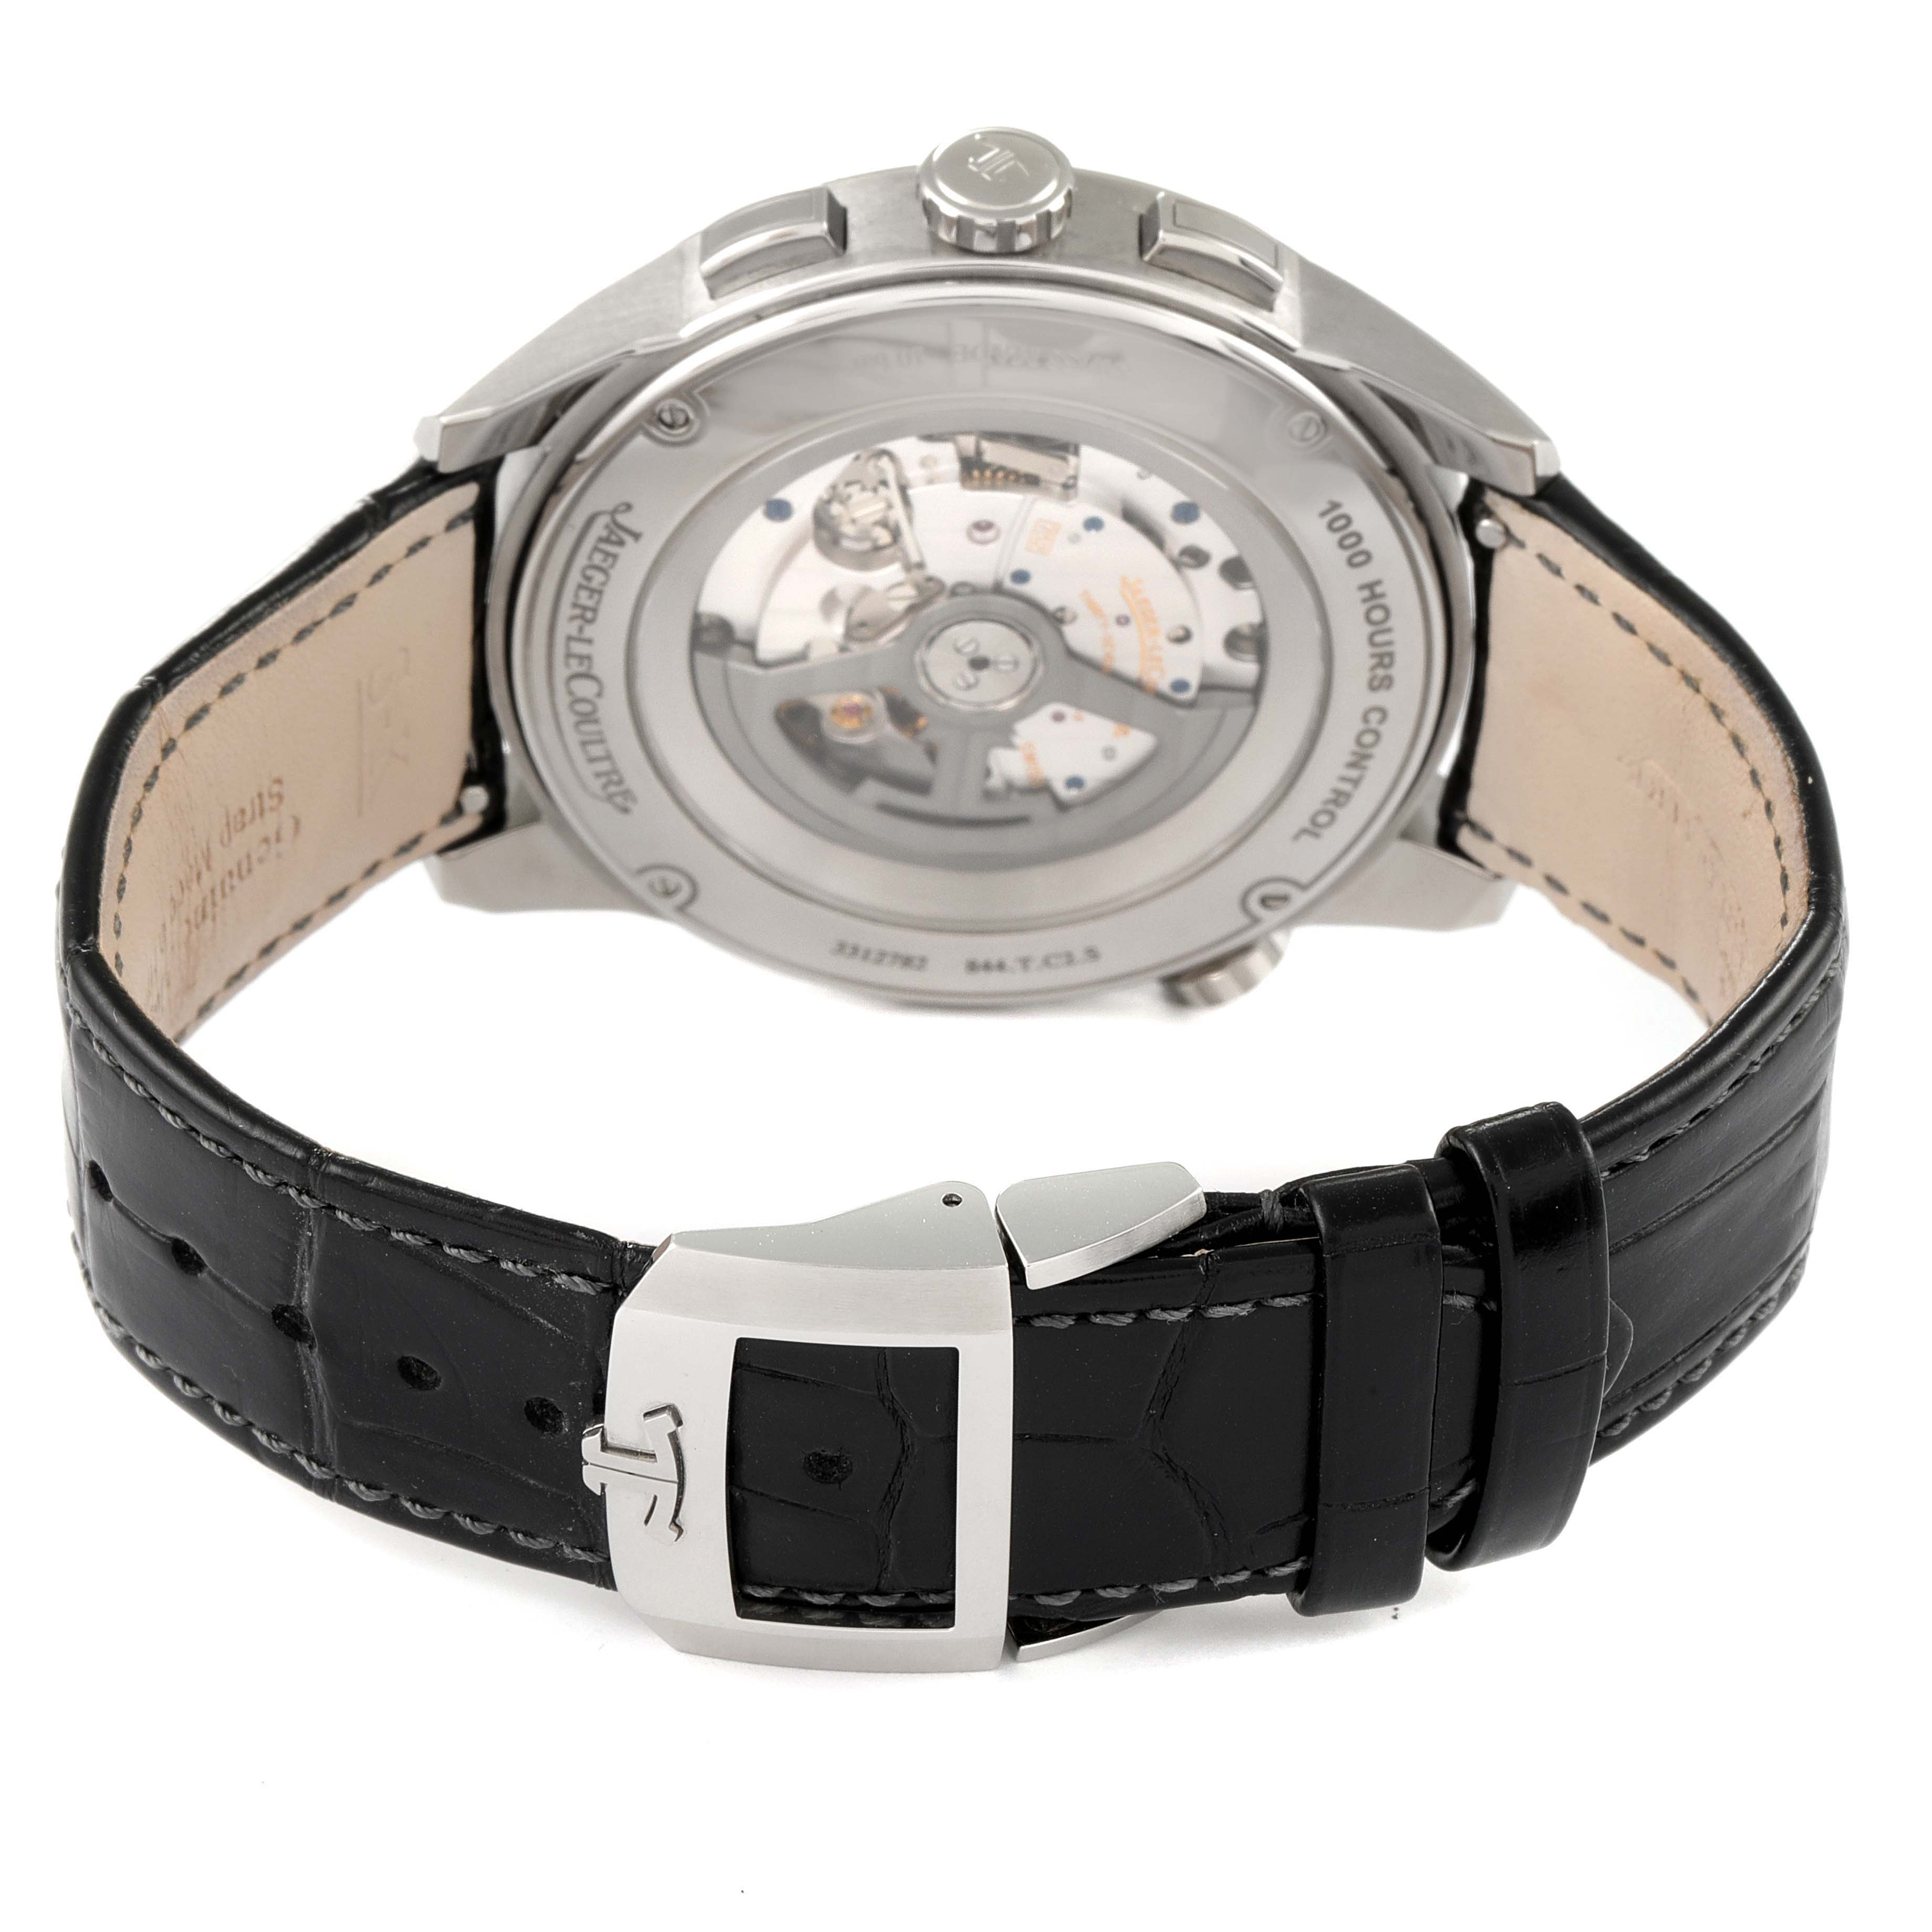 Jaeger Lecoultre Polaris WT Chronograph Watch 844.T.C2.S Q905T470 Box ...